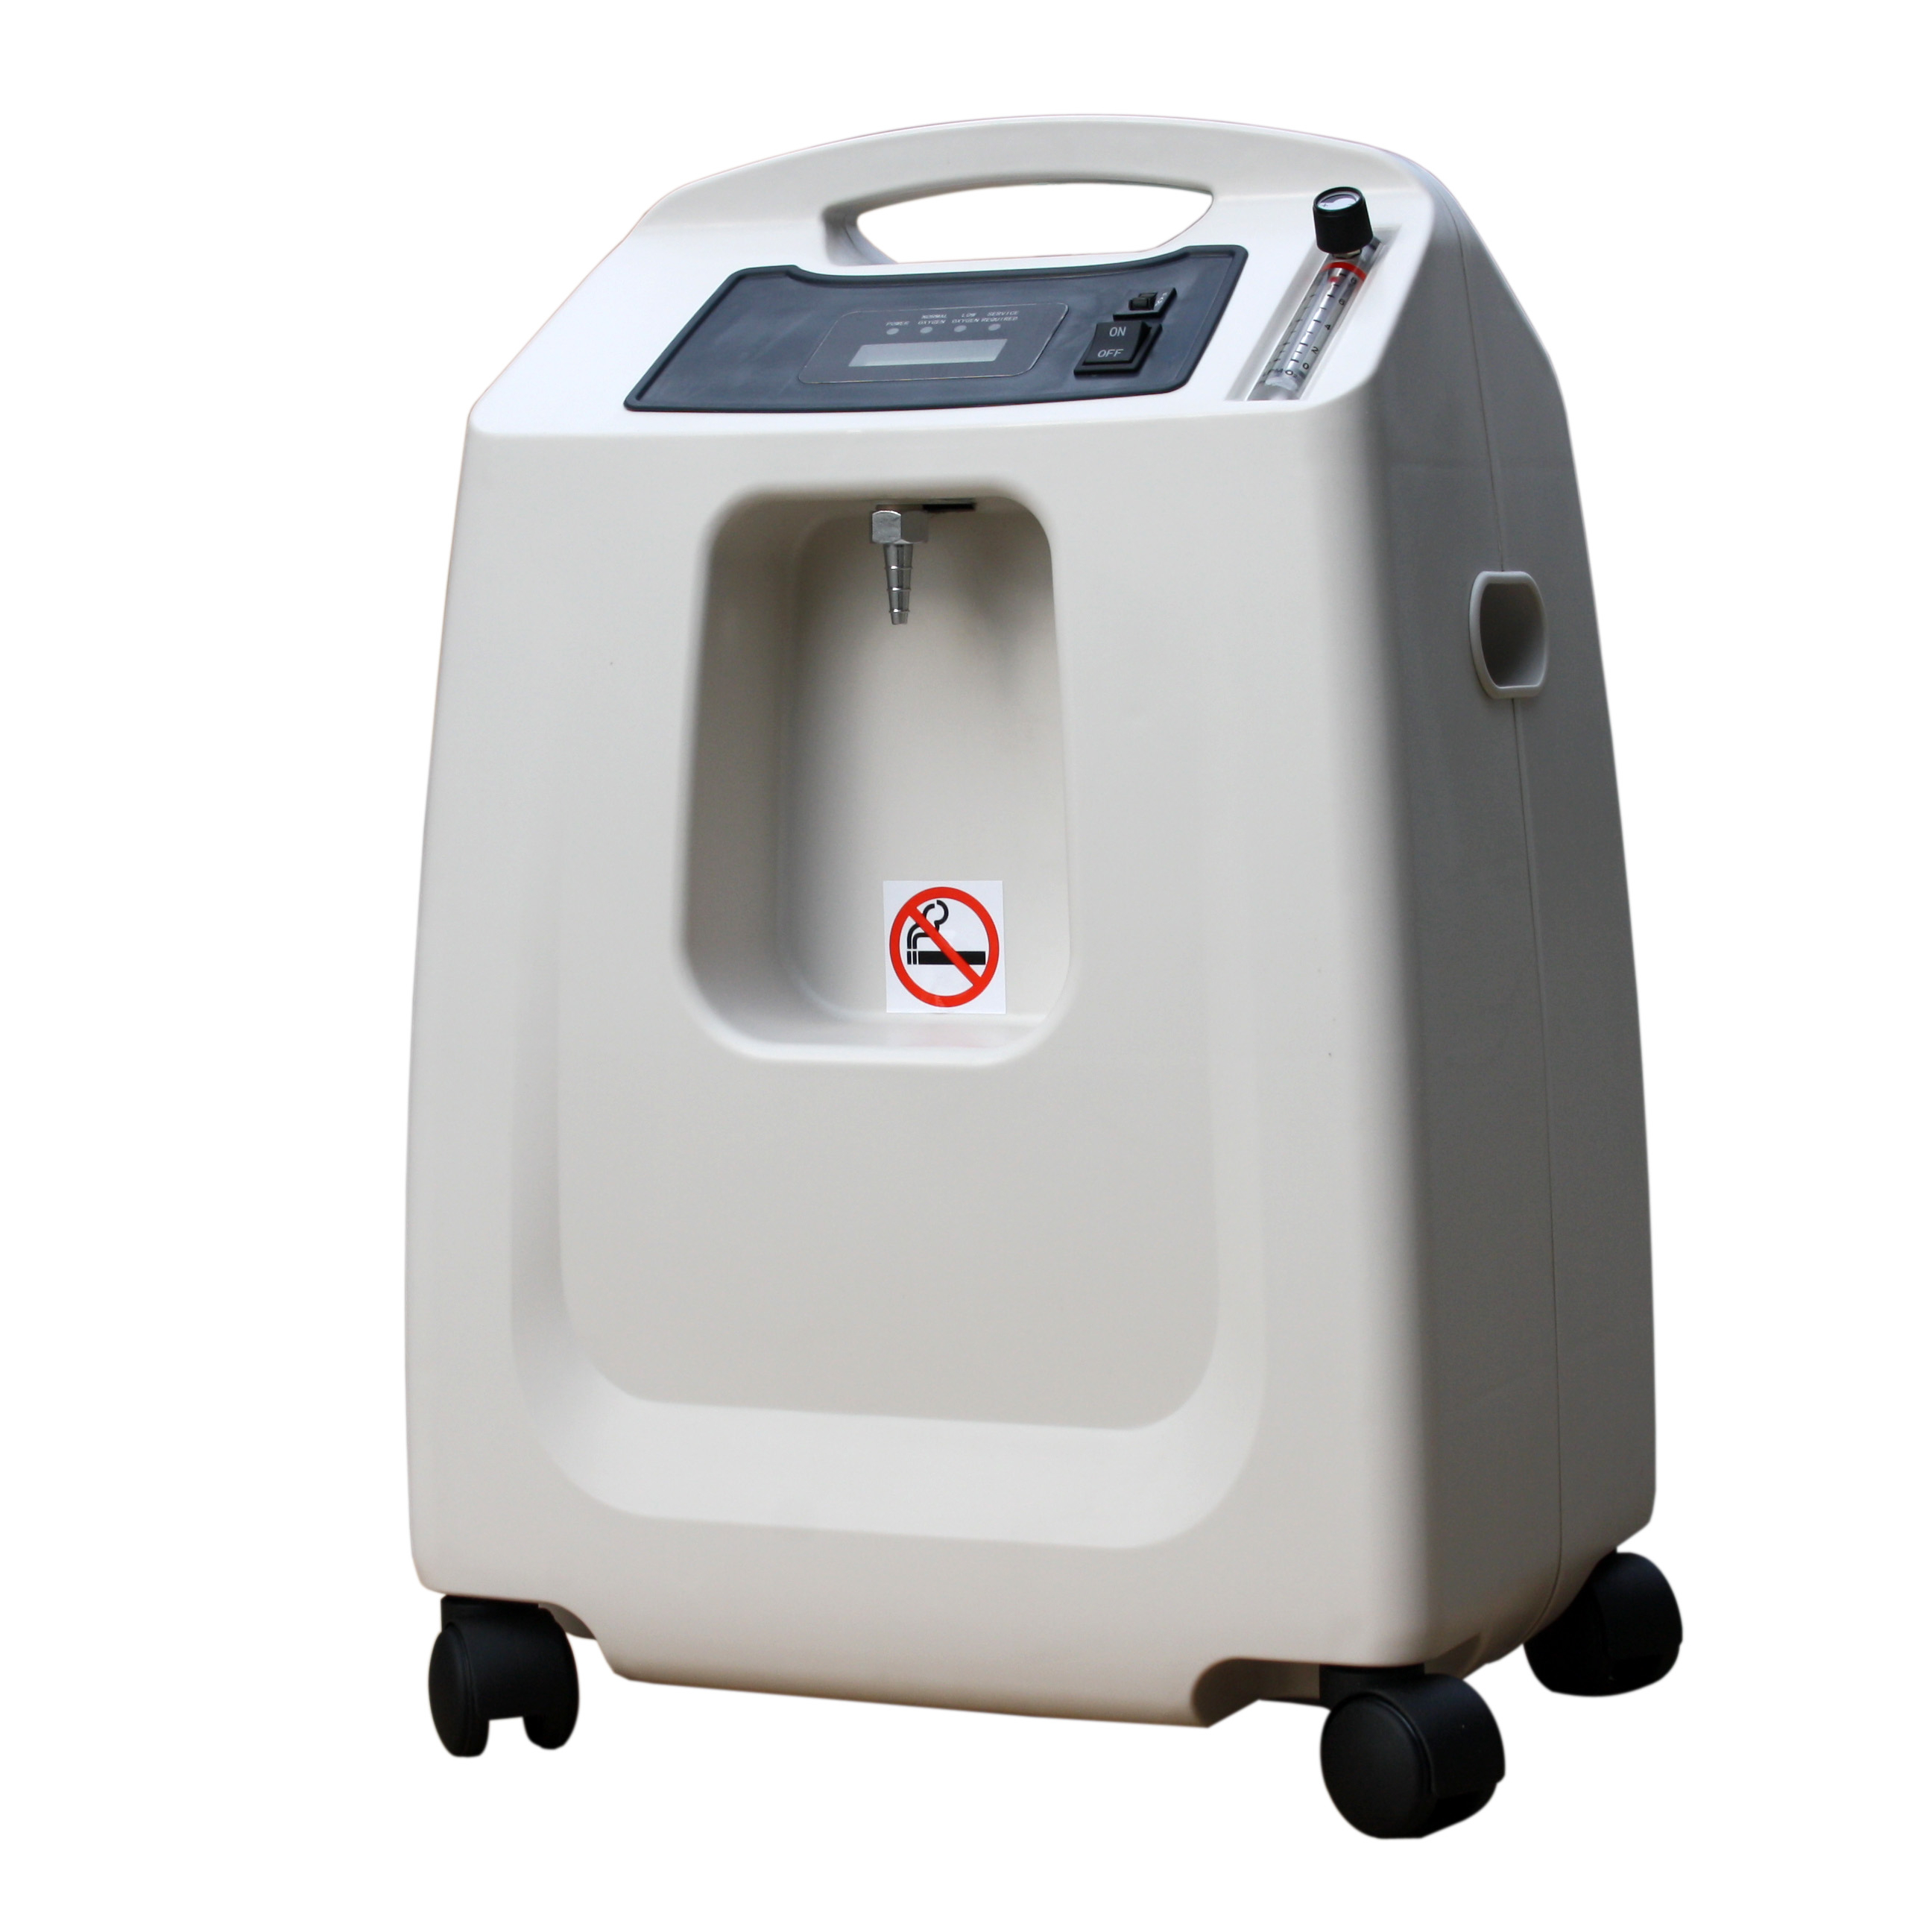 Harga Portable Oxygen Concentrator Medis 10 Liter